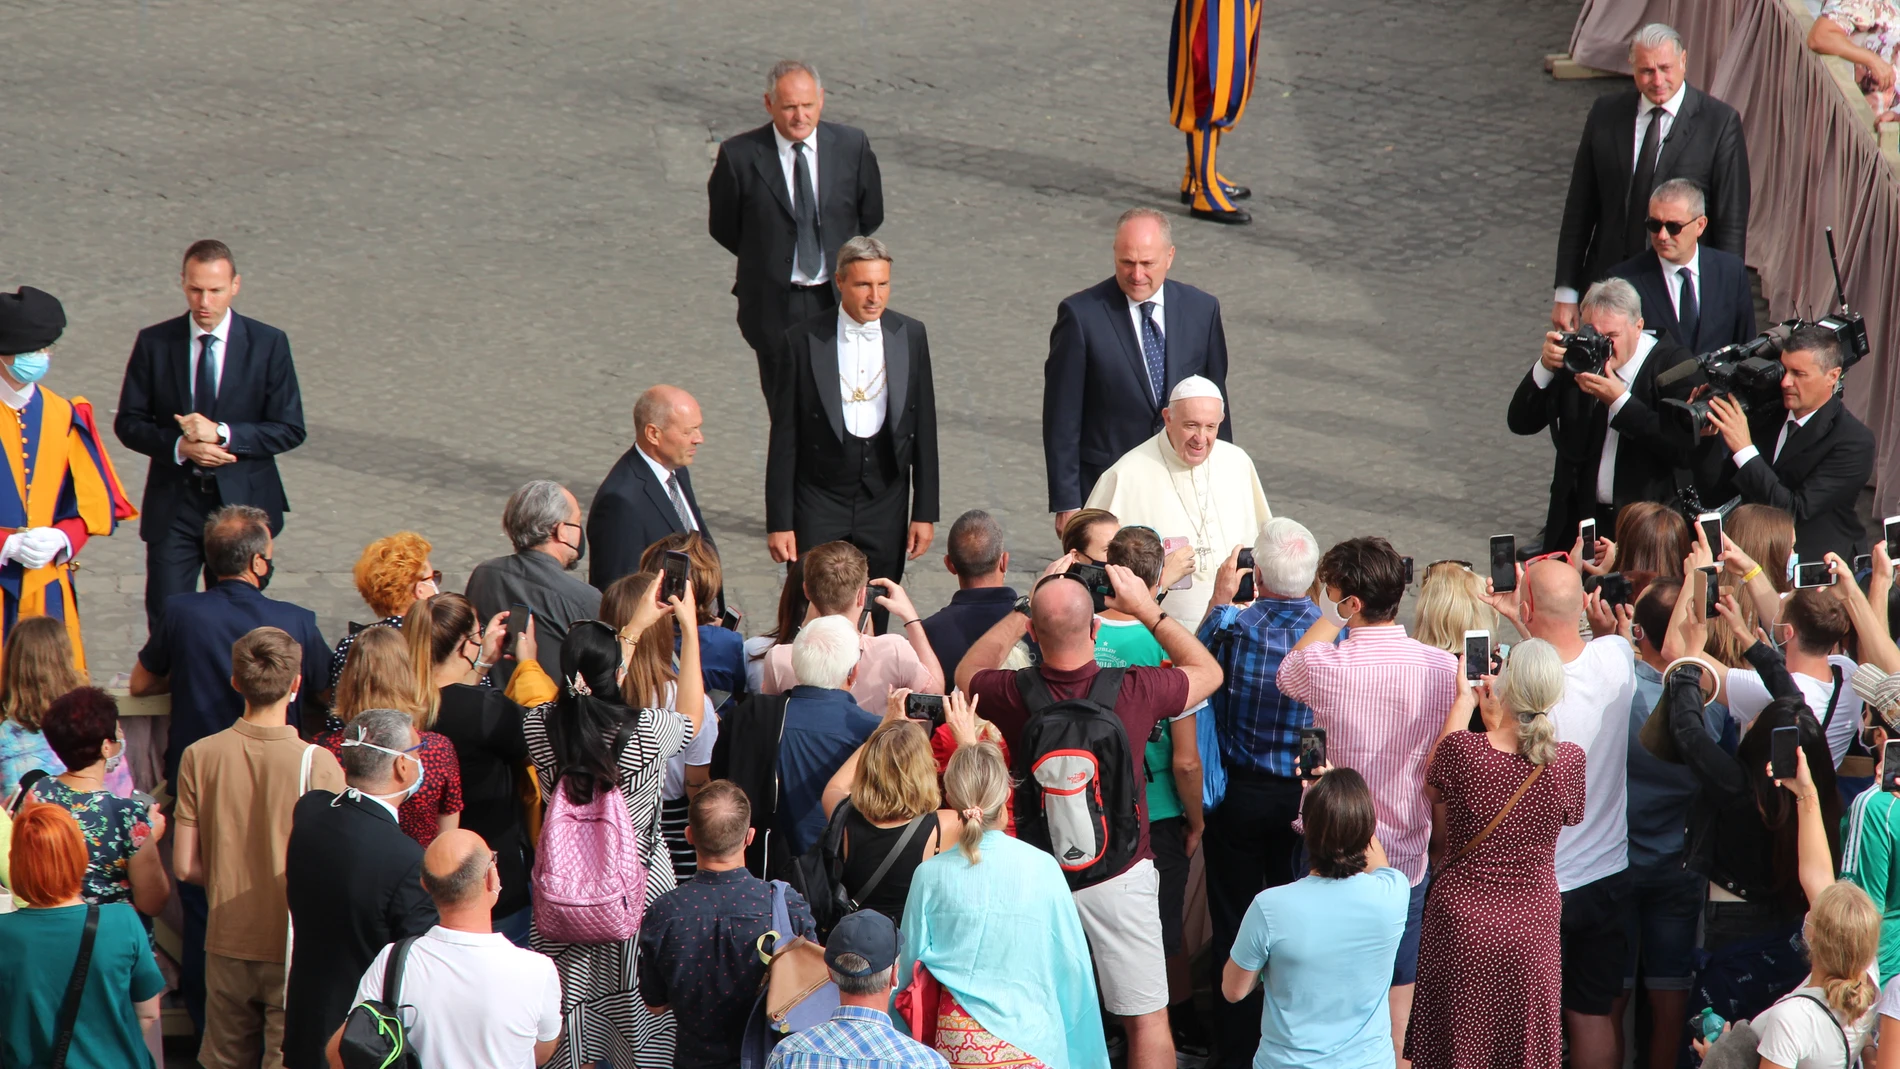 El Papa en su primera audiencia con fieles después de seis meses. Imagen Alicia Romay